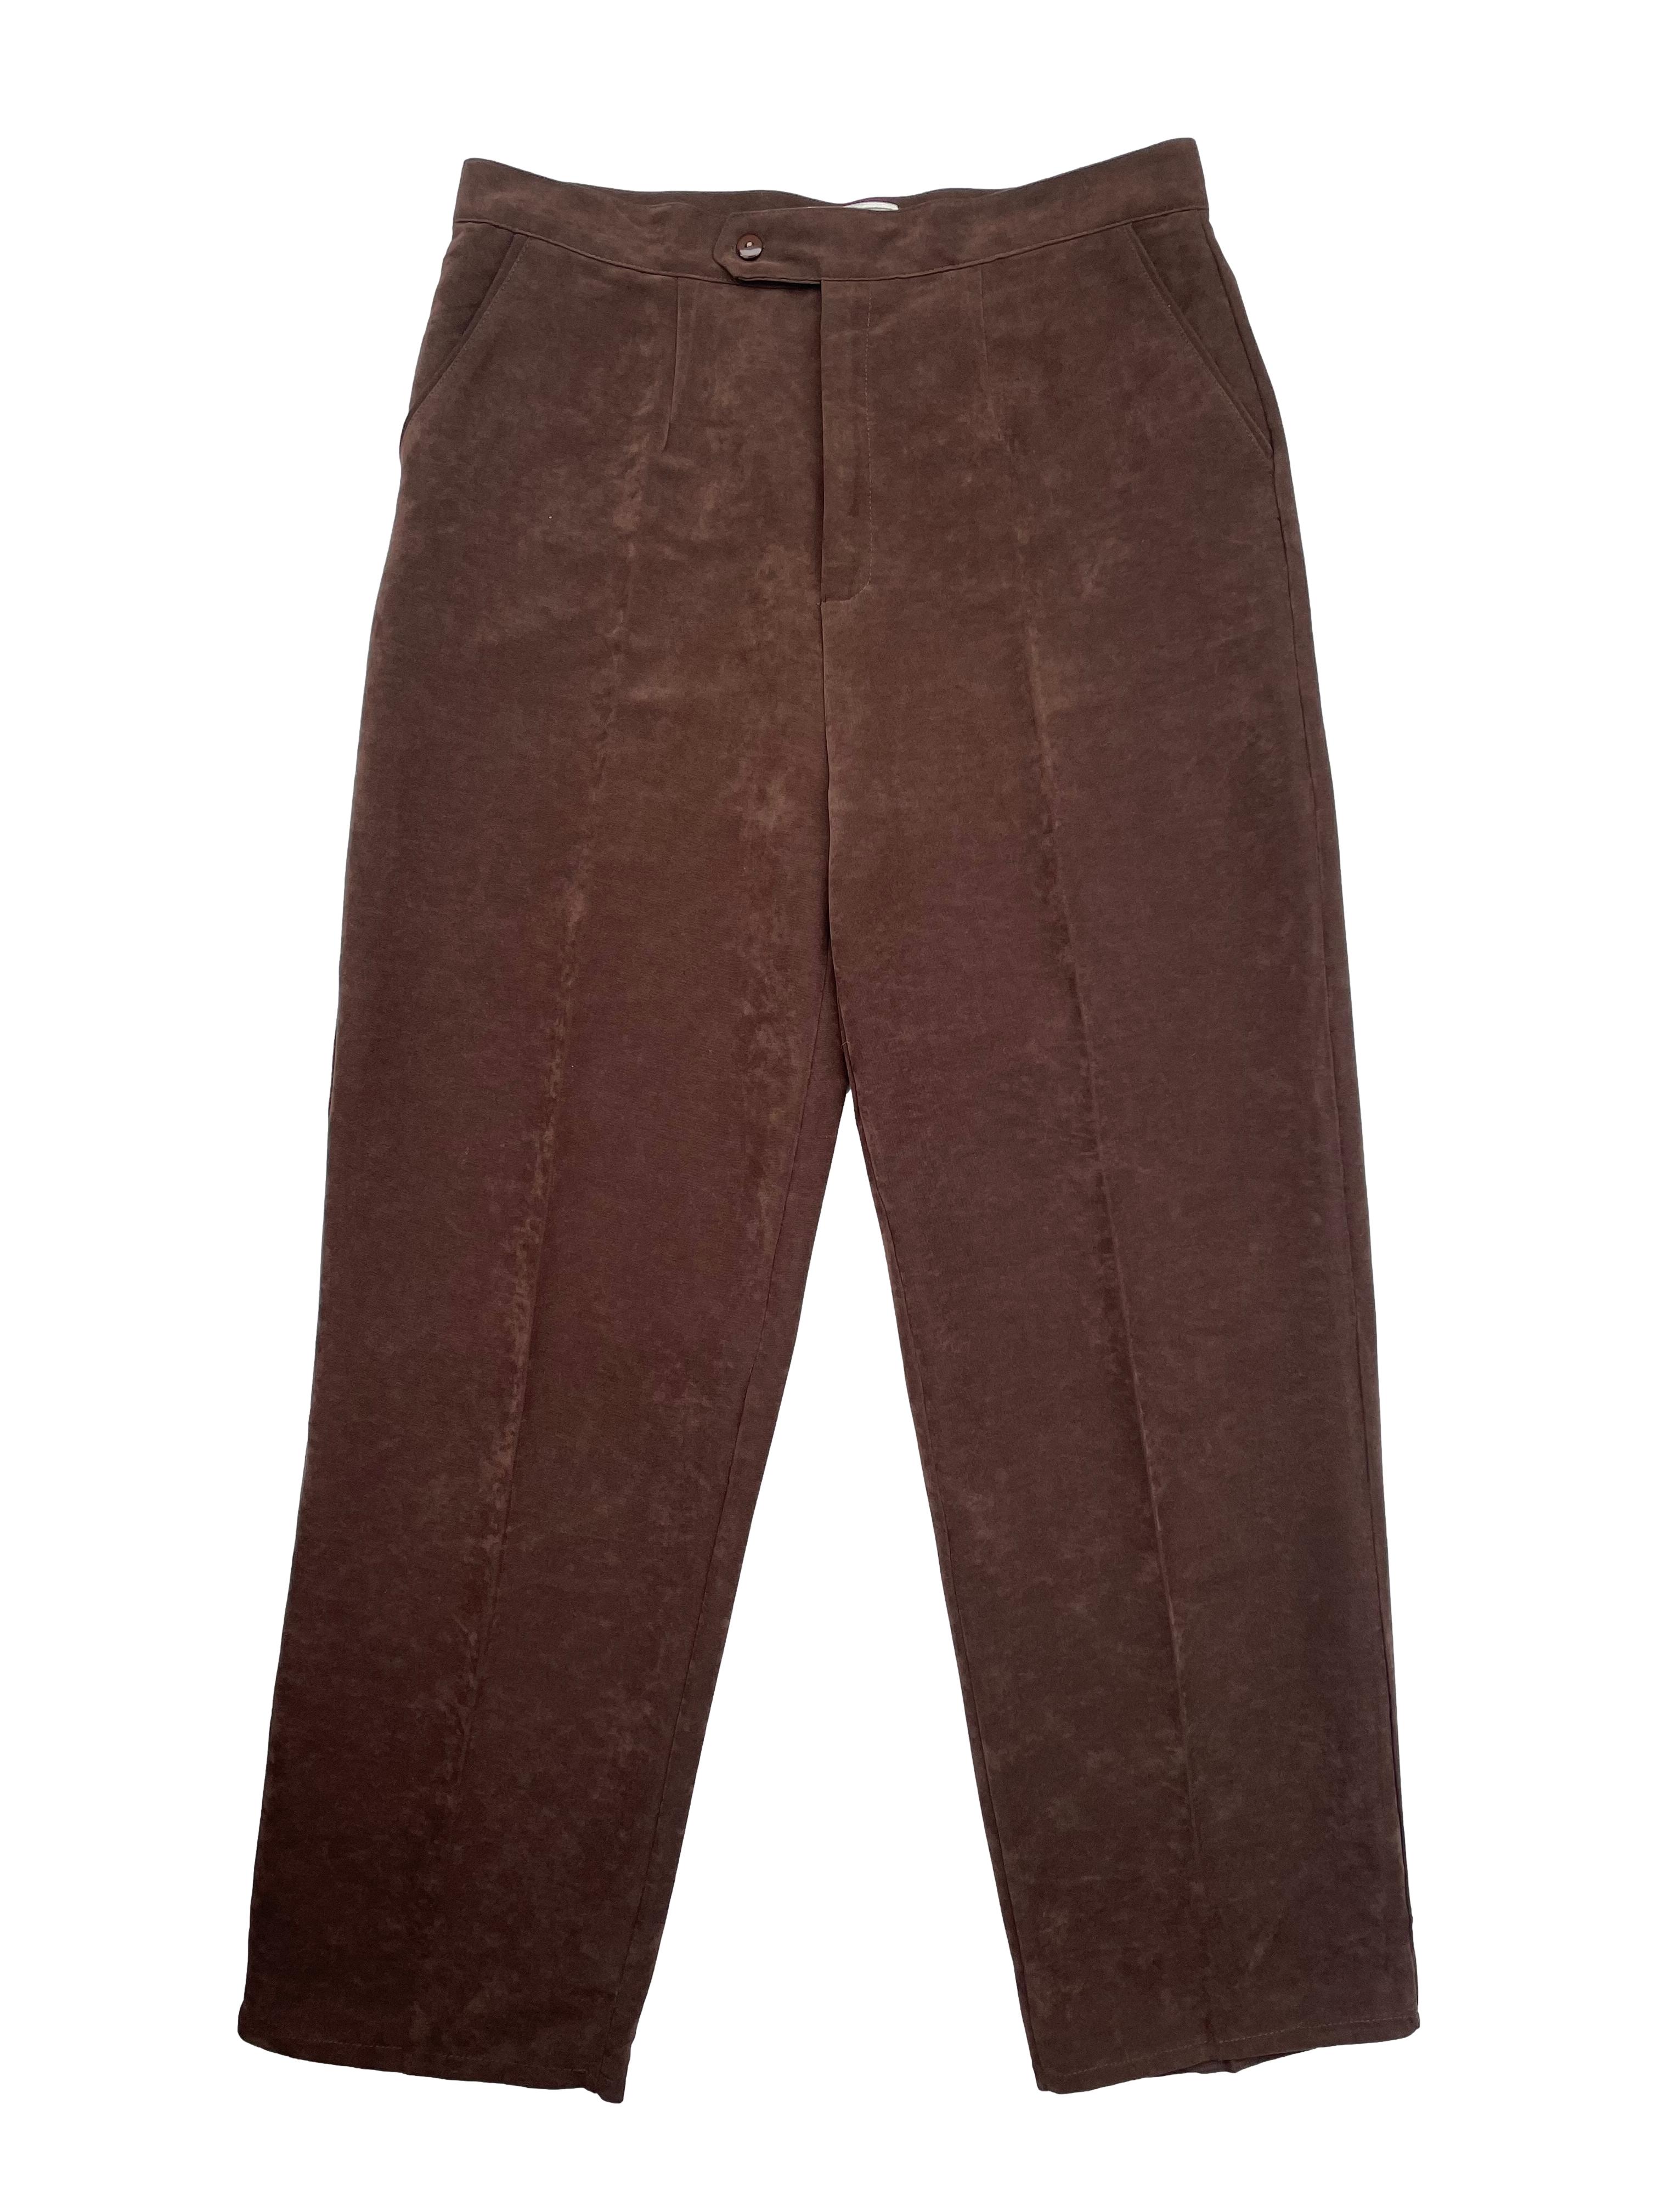 Pantalón sastre de lanilla azul marino, corte recto con tres bolsillos.  Cintura 80cm, Tiro 22cm, Largo 95cm.